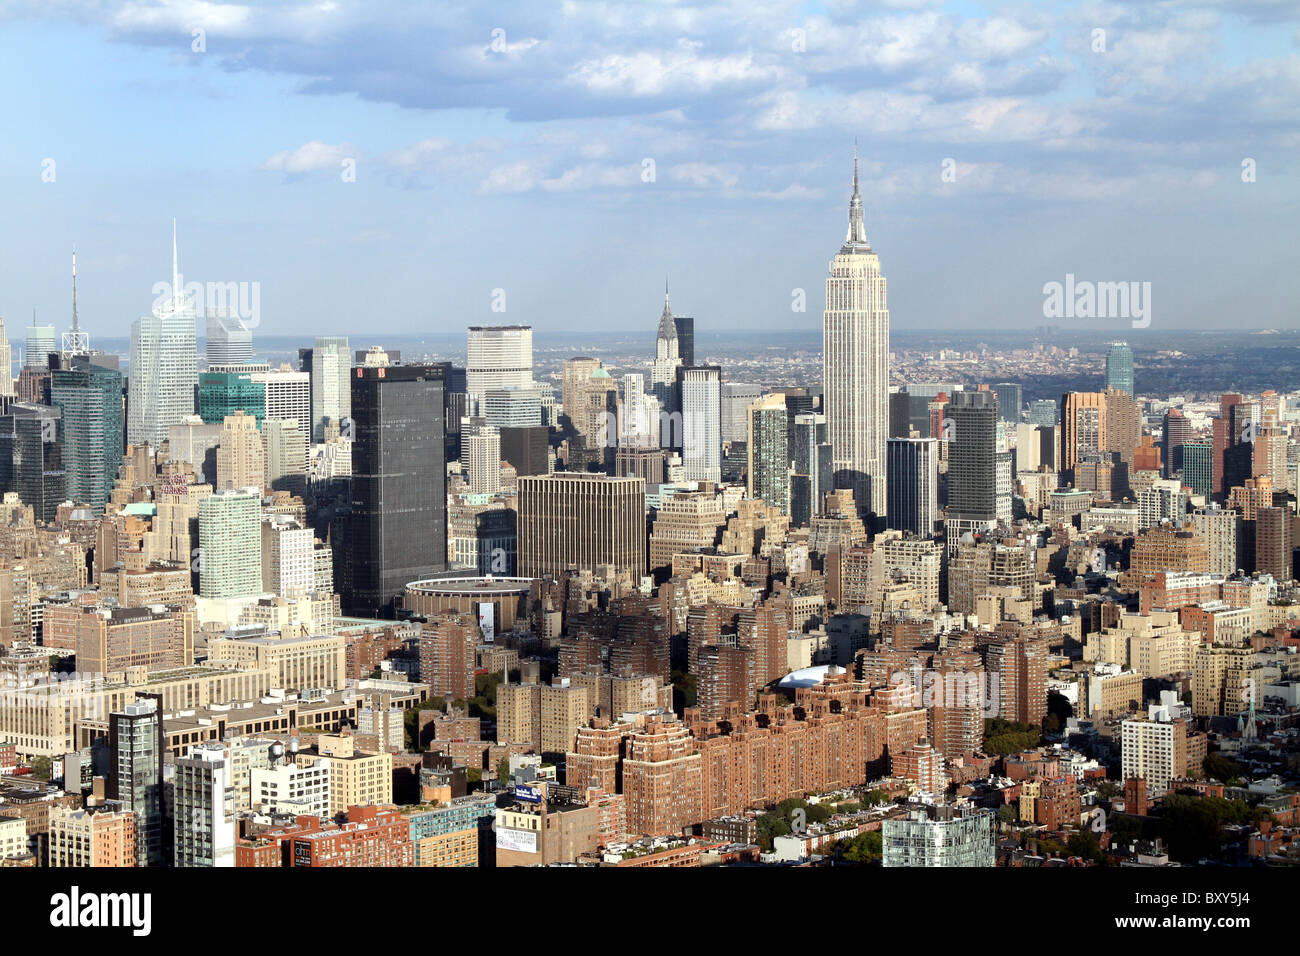 Vista aerea della città di New York skyline e midtown con l' Empire State Building a Manhattan Island, Stati Uniti d'America, America Foto Stock